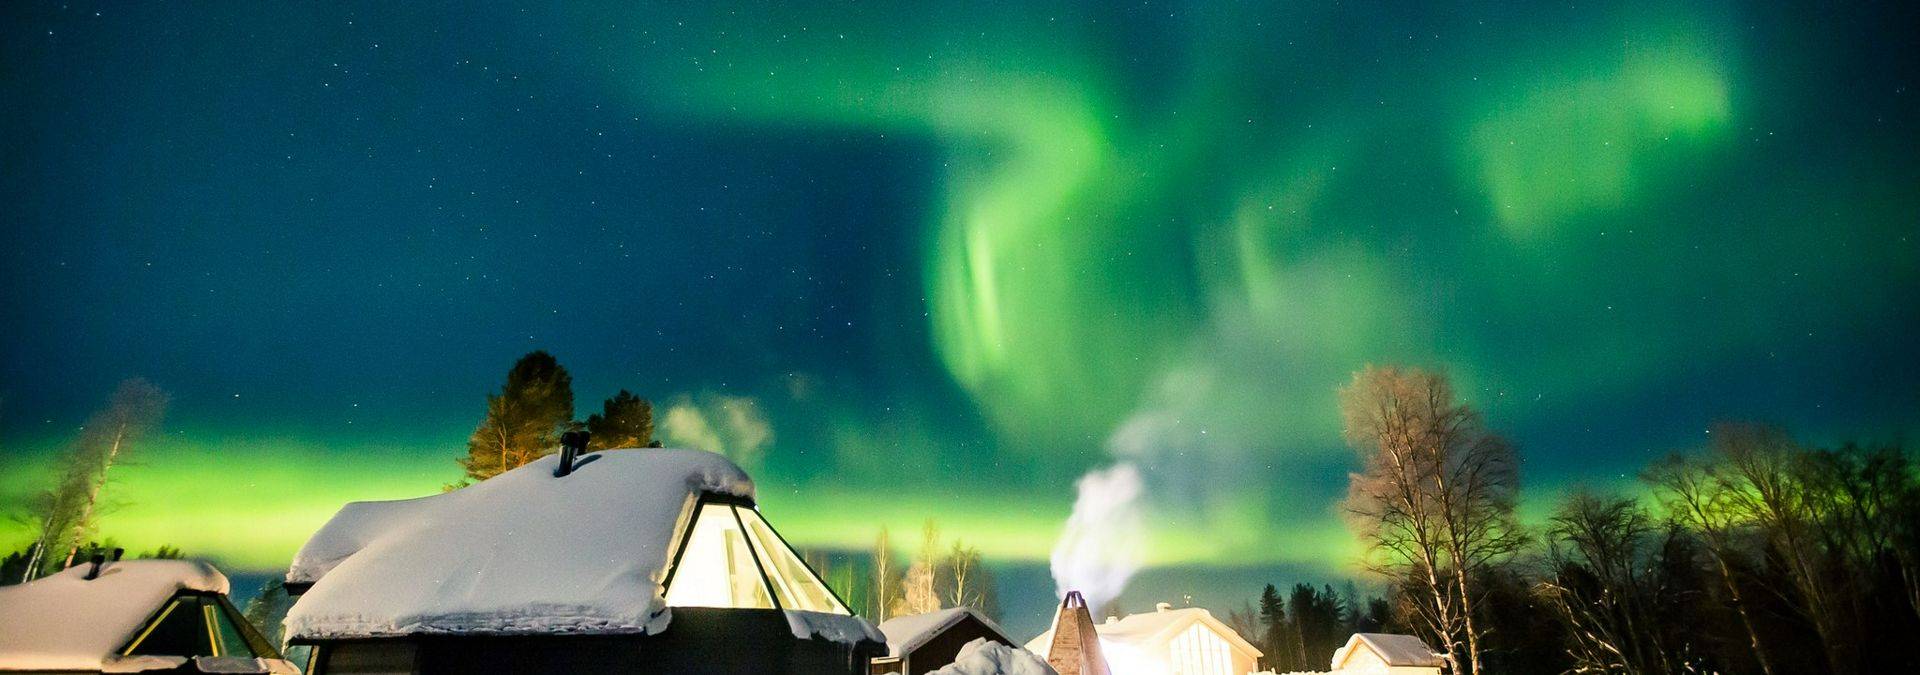 Aurora Cabin glass igloo in Apukka Resort Rovaniemi Lapland Finland.jpg